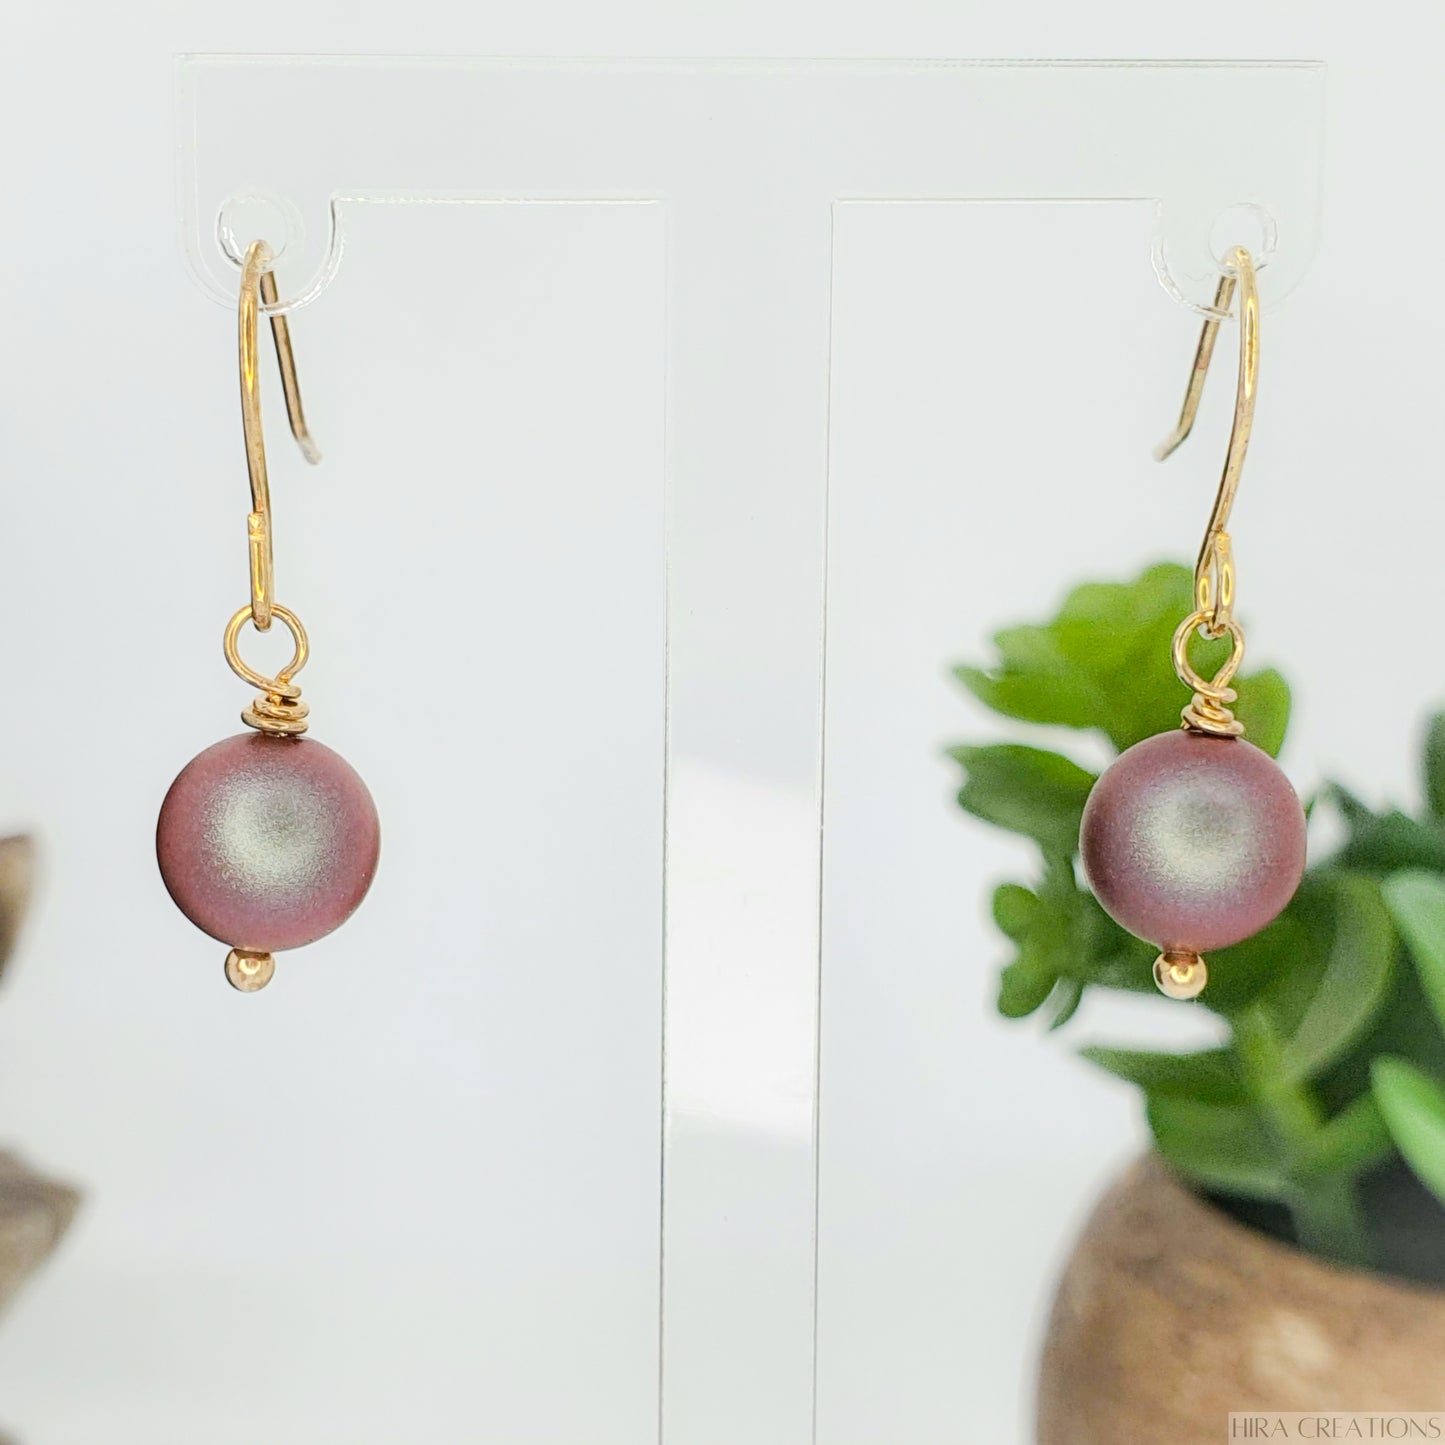 Swarovski pearl earrings